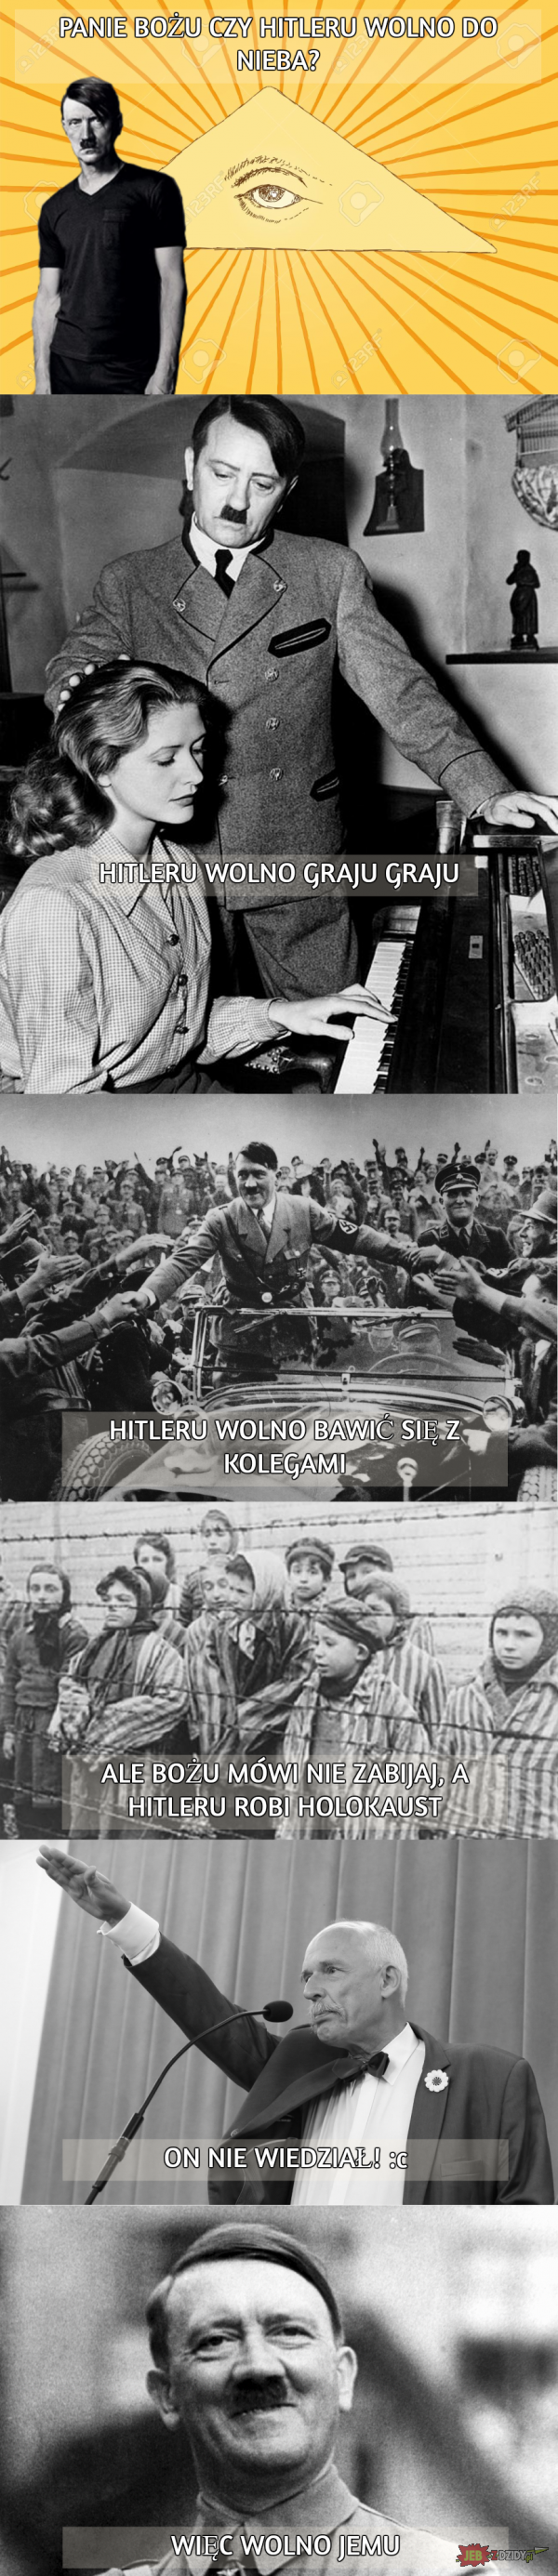 Czy Hitleru wolno do nieba?